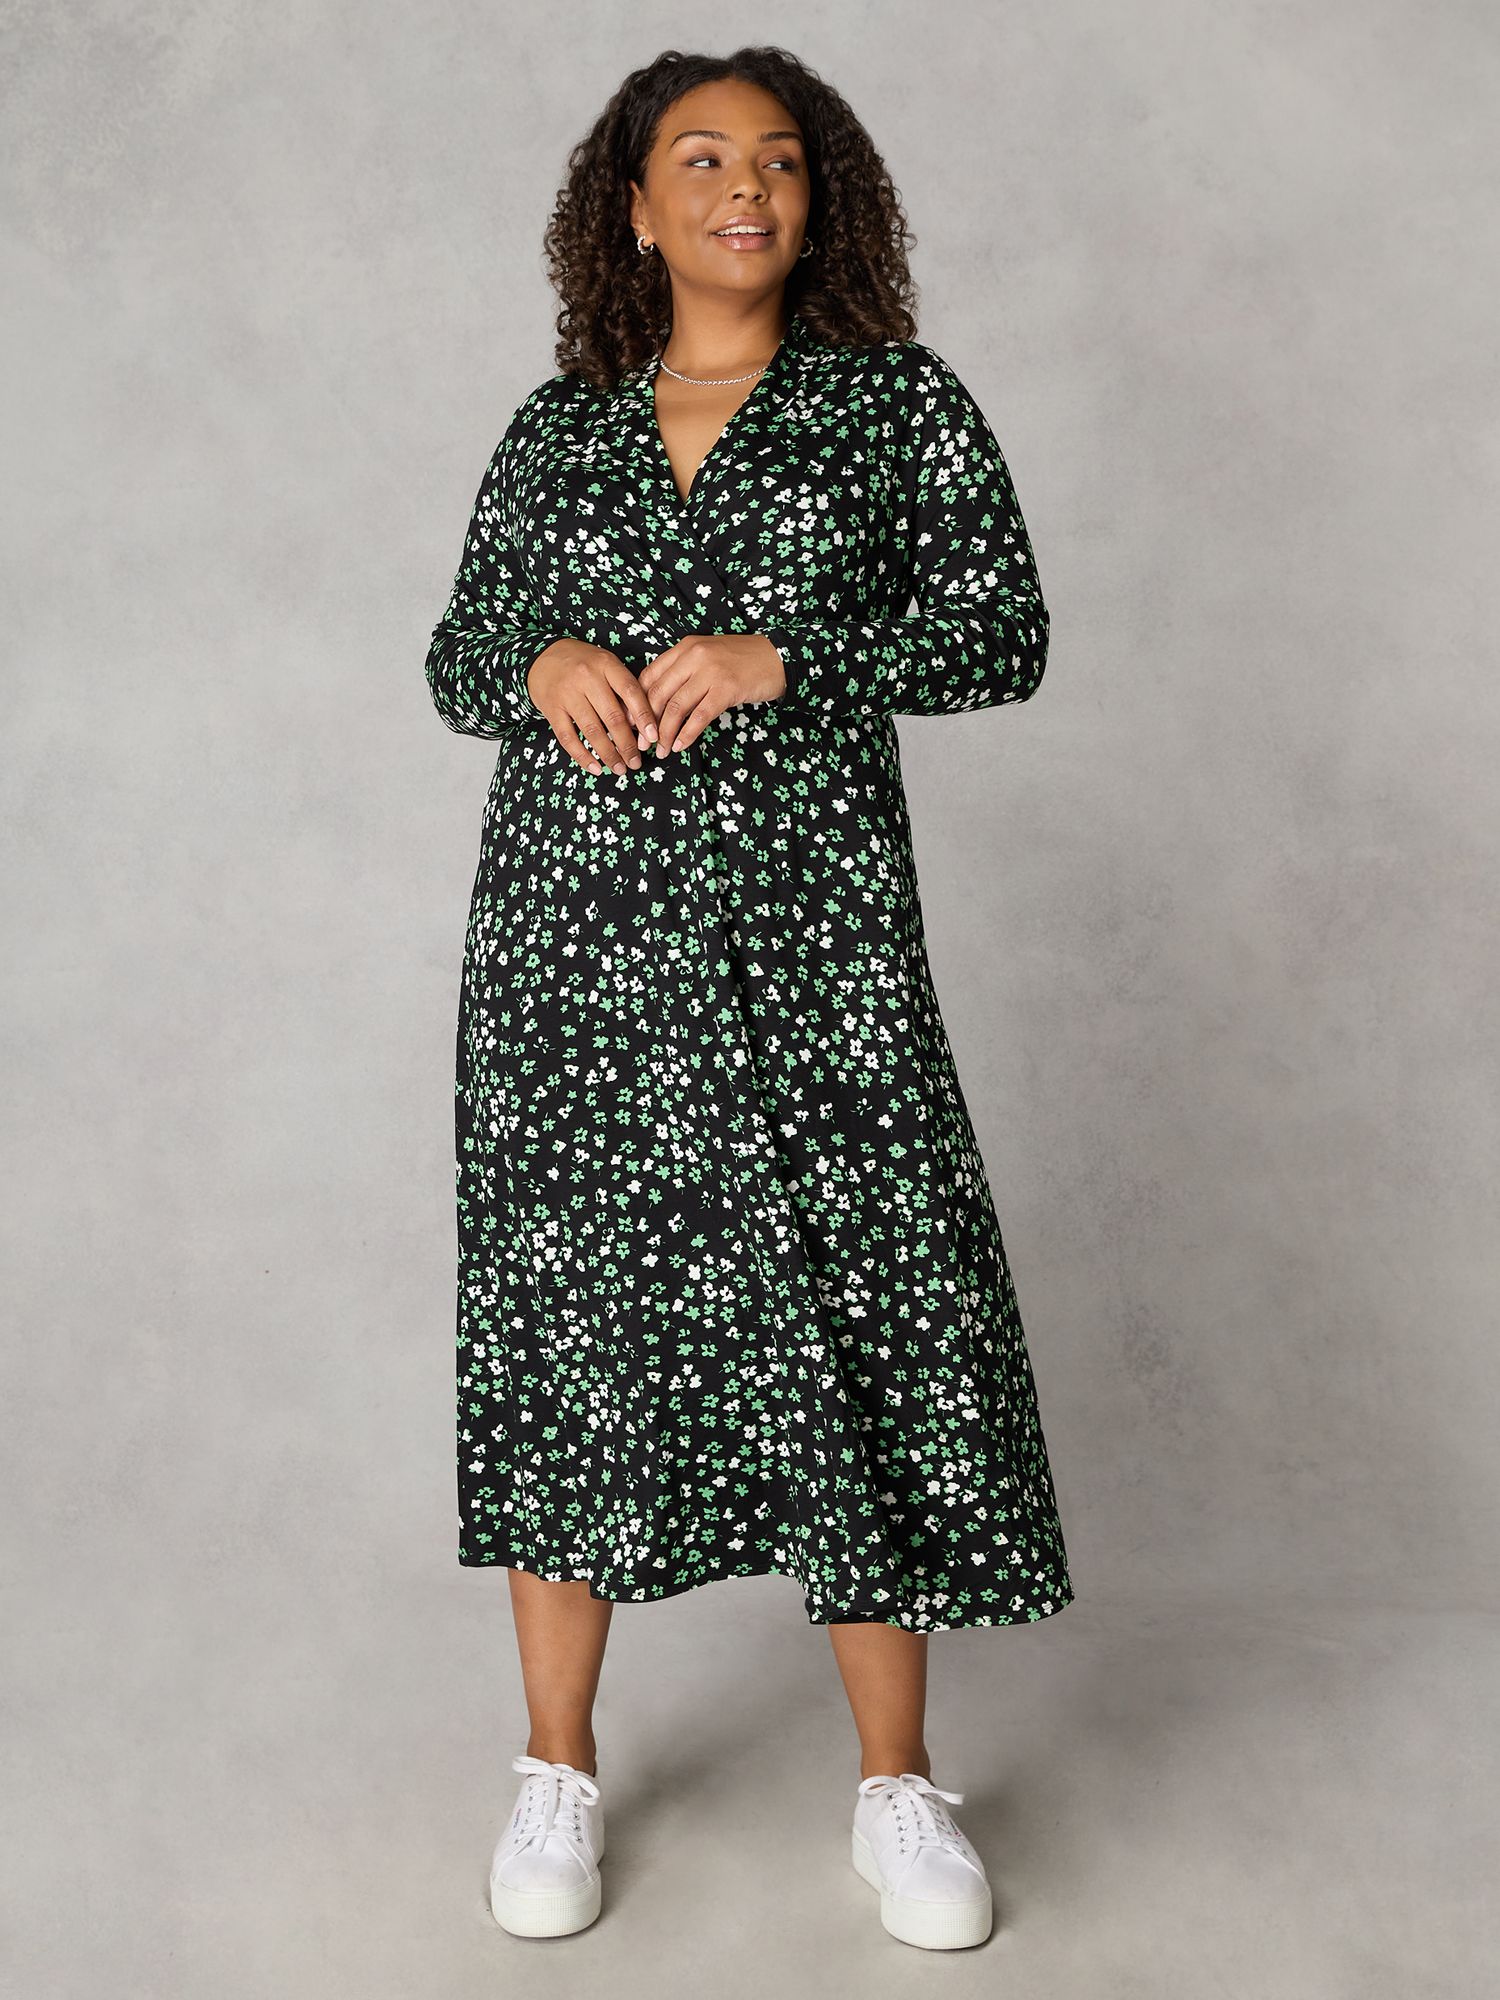 Платье миди с принтом Ditsy Live Unlimited, зеленый/мульти женское свободное платье рубашка средней длины элегантное платье большого размера с геометрическим принтом круглым вырезом и рукавами в